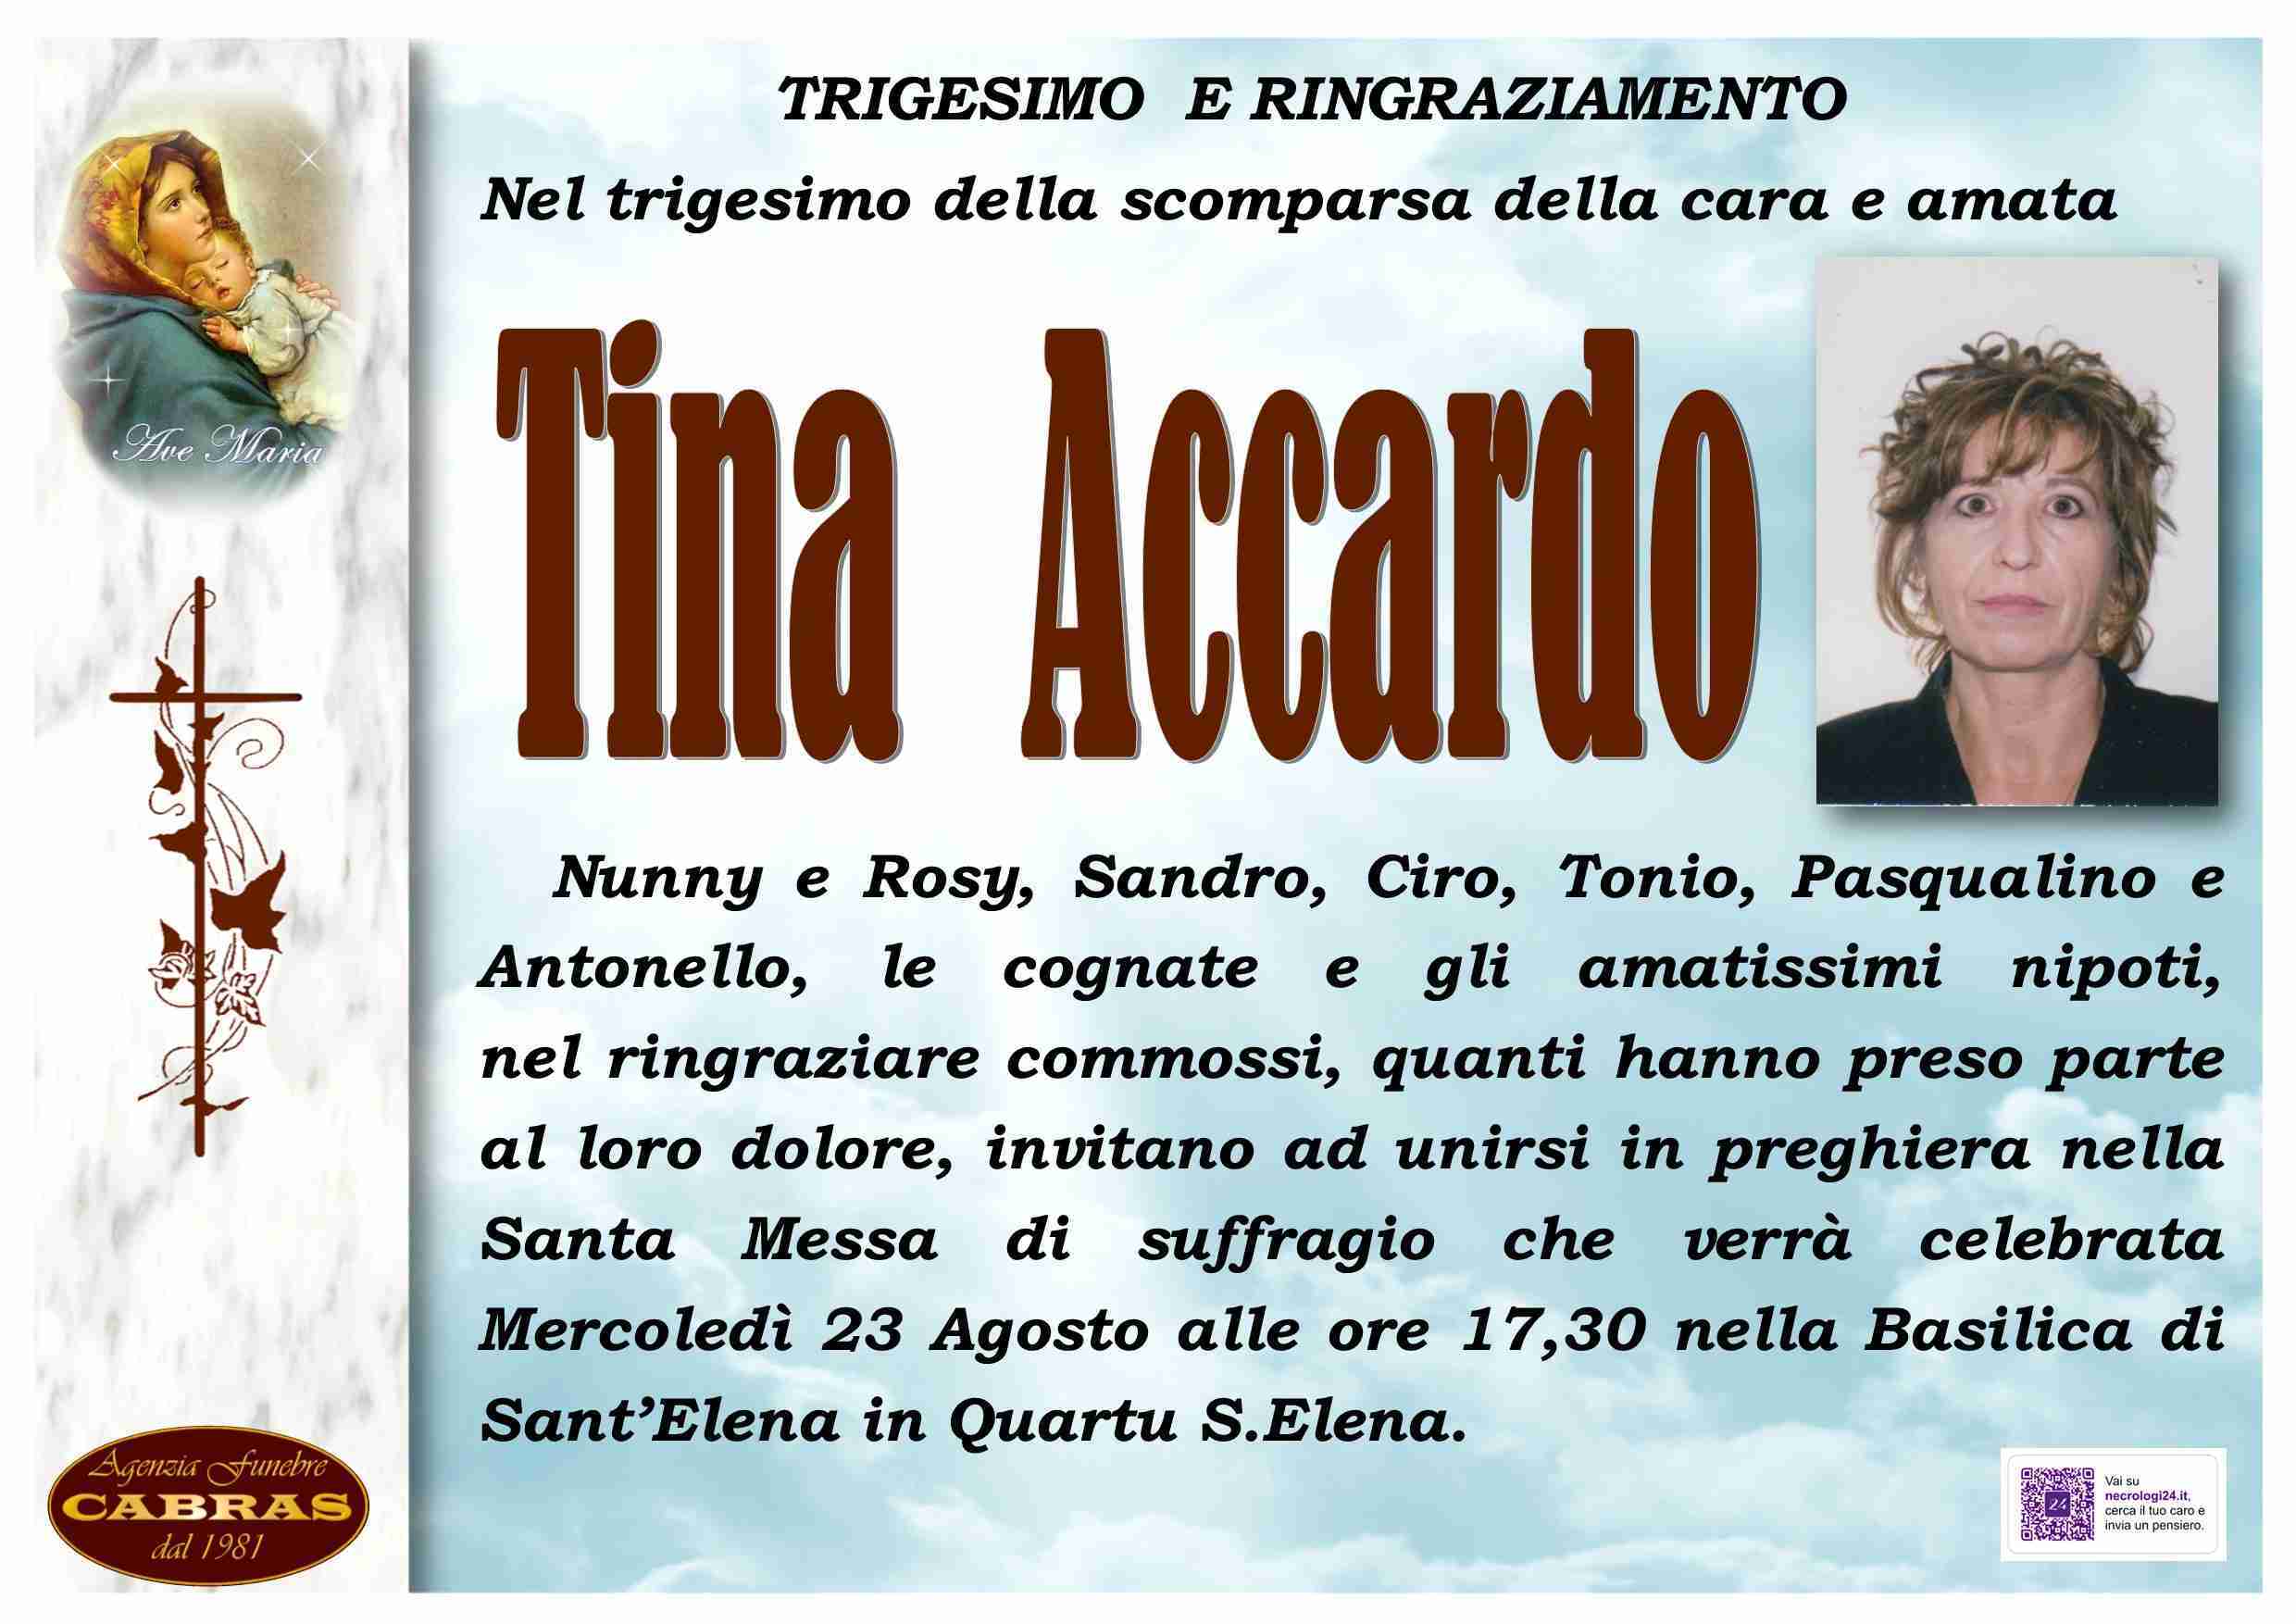 Tina Accardo